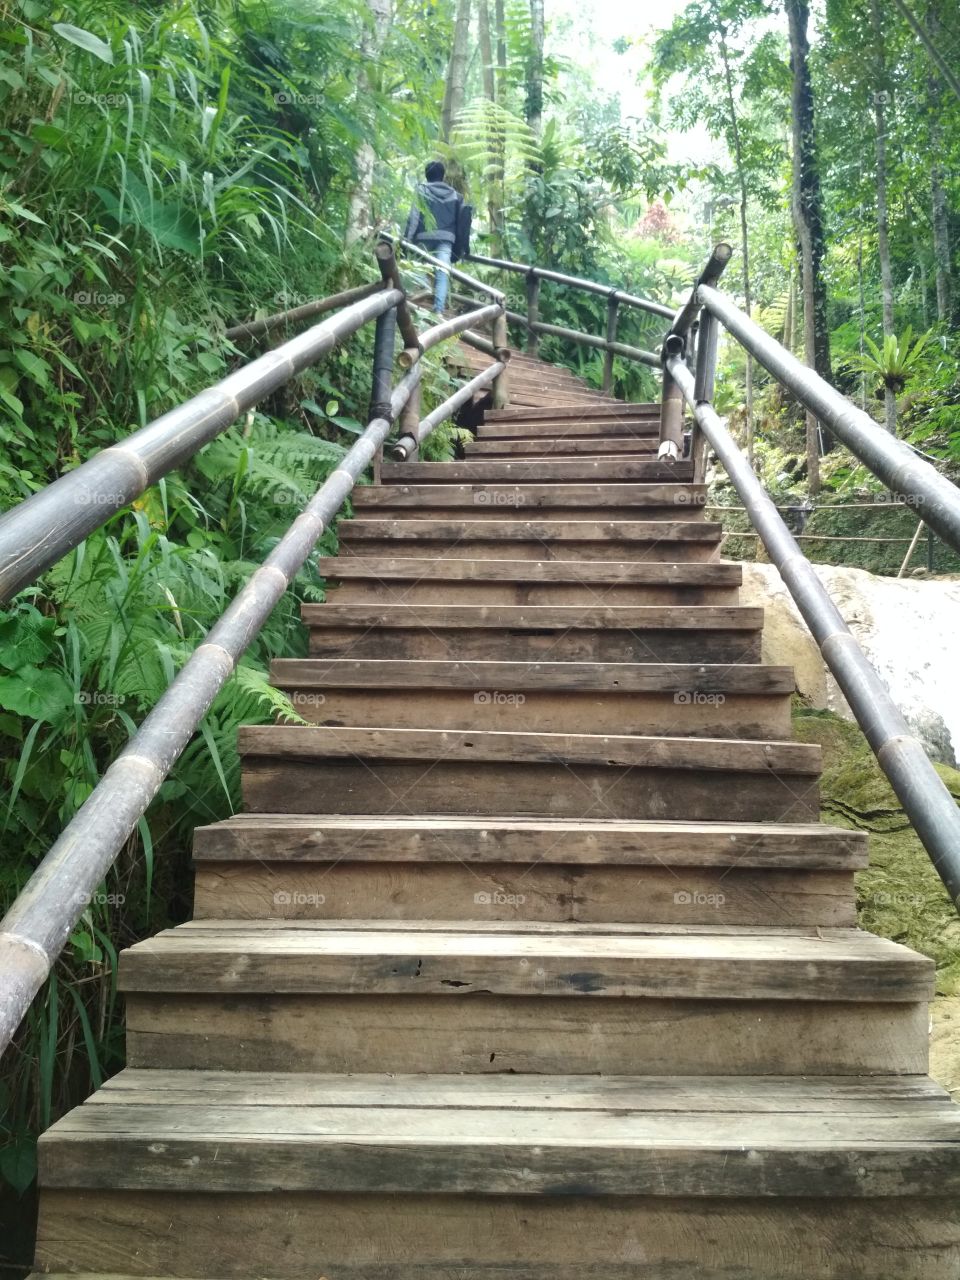 tangga mengajarkan kita untuk tetap berjalan hingga atas